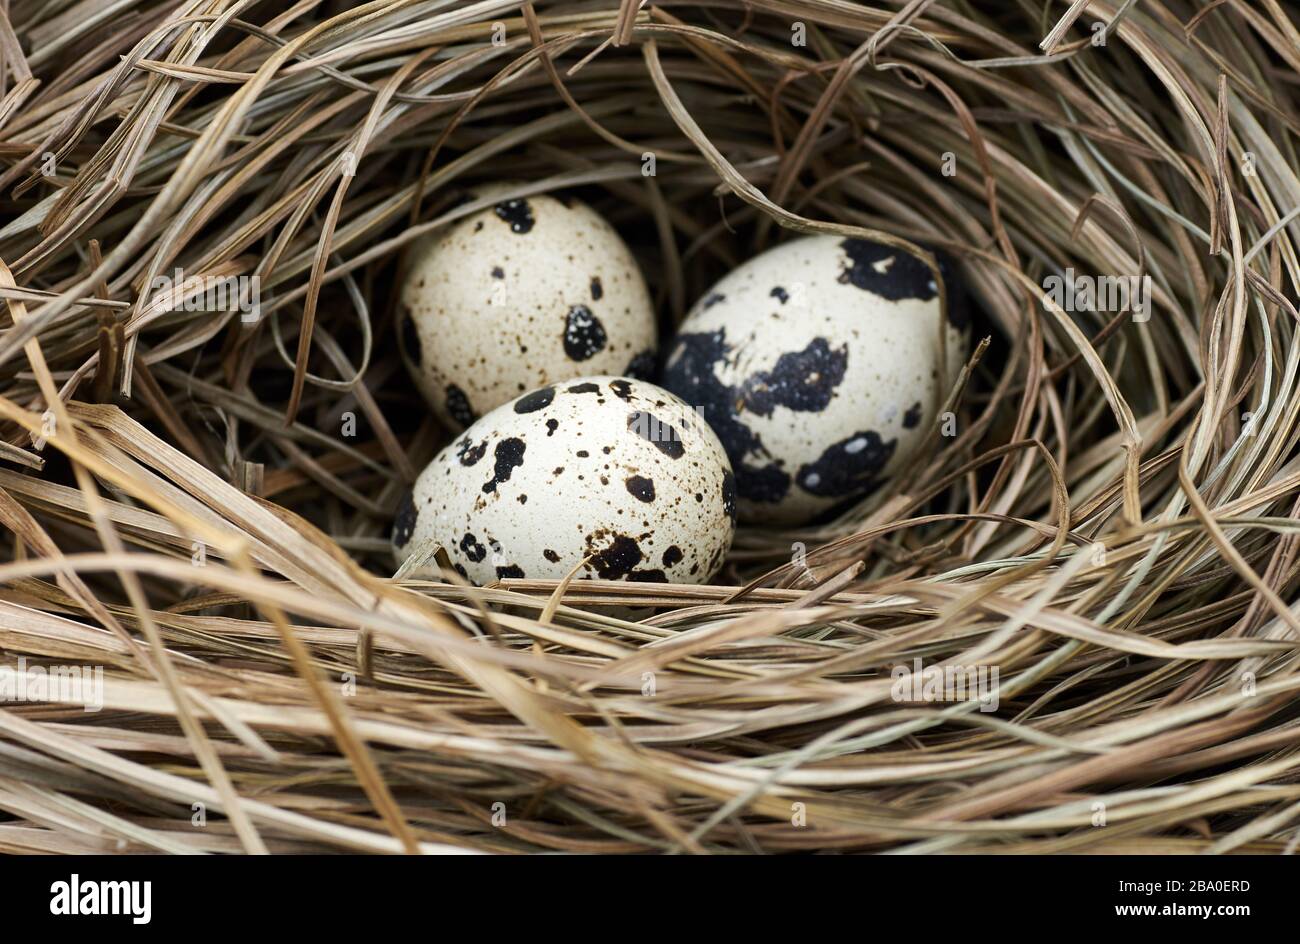 Quali o uova di uccelli selvatici nel nido fatto di erba secca e paglia, macro, closeup, copy space, pasqua e primavera vacanze concetto Foto Stock